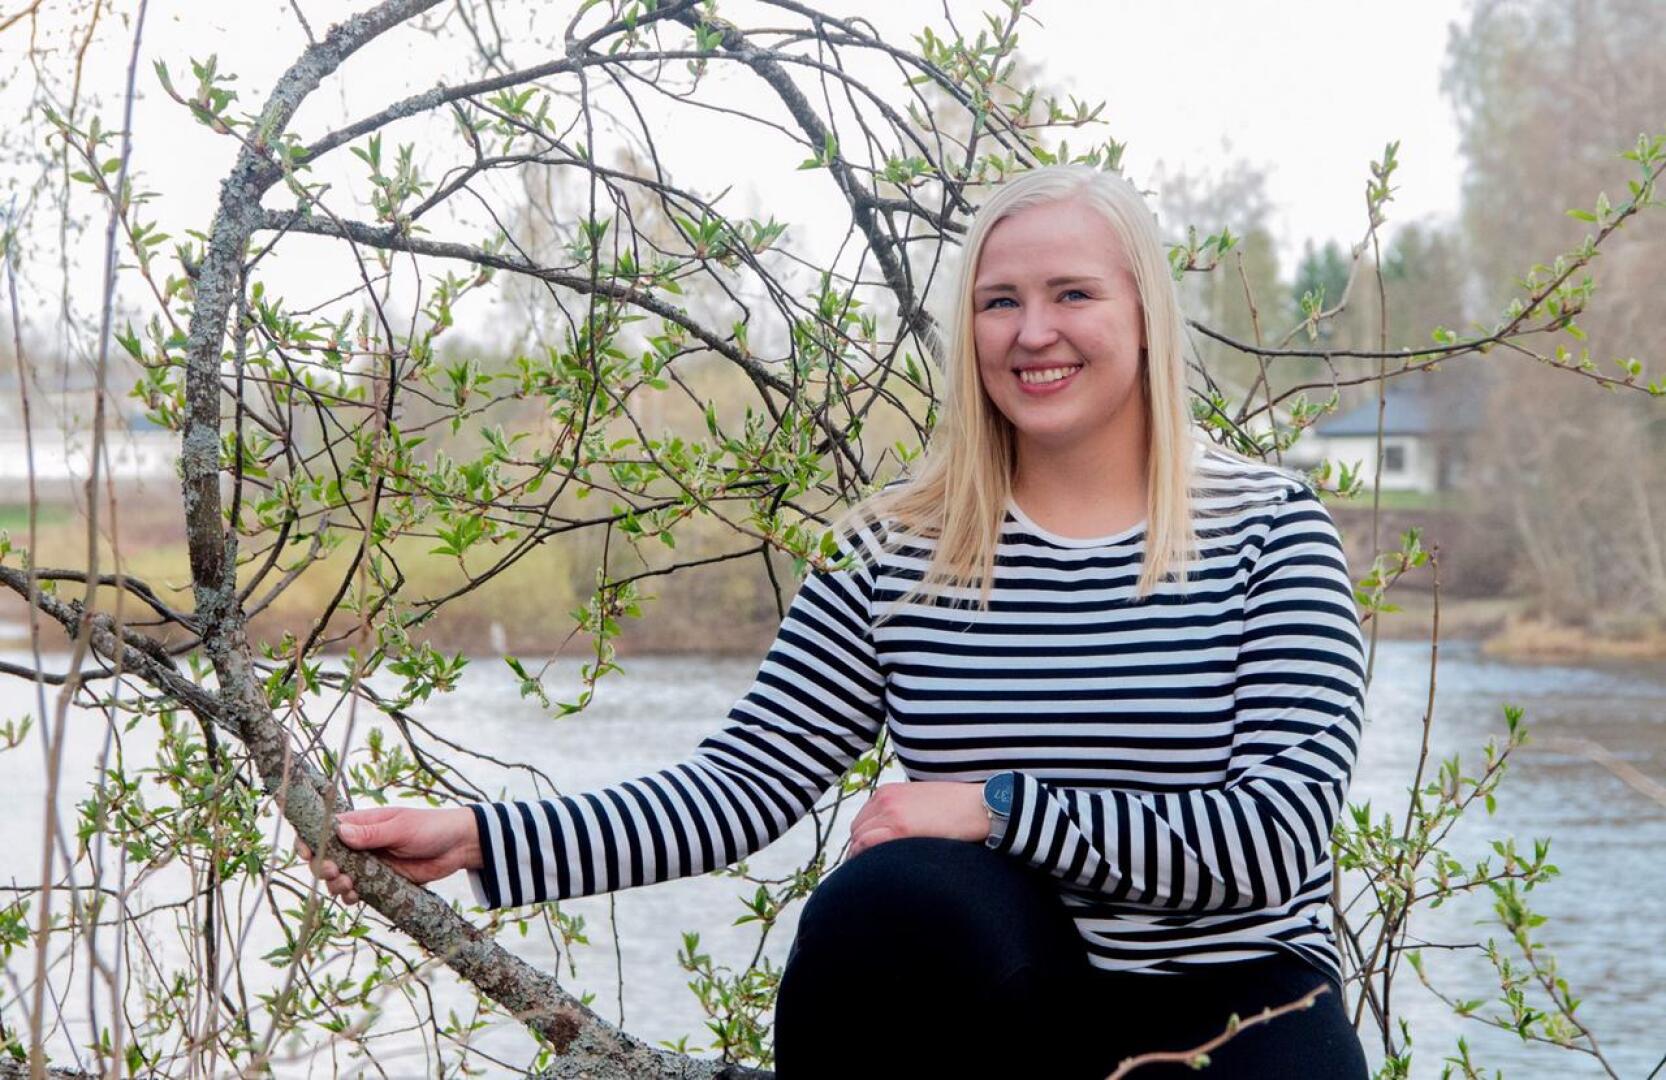 Oulaisten kaupunginhallituksen puheenjohtajaksi on nousemassa ensimmäistä kertaa nainen, 27-vuotias Marjut Lehtonen.